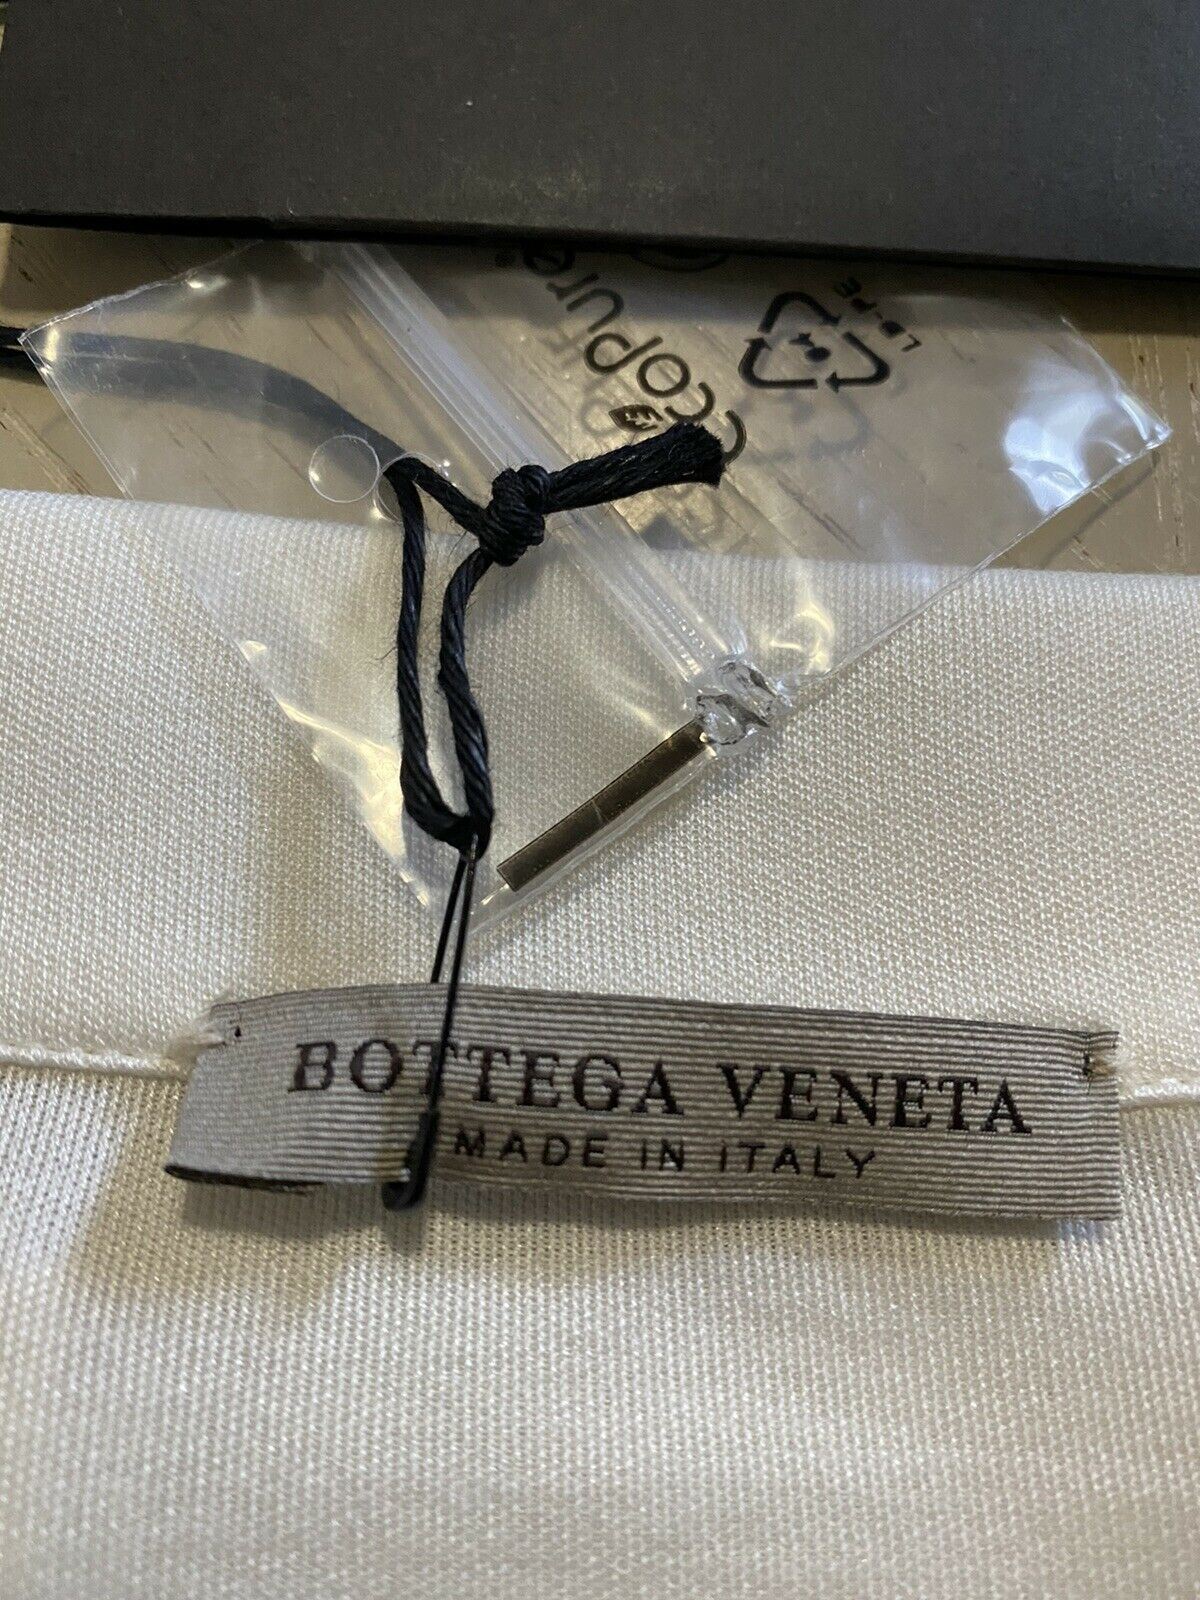 Neu mit Etikett: 490 $ Bottega Veneta Herren-Poloshirt Creme L US (52 Eu) Italien